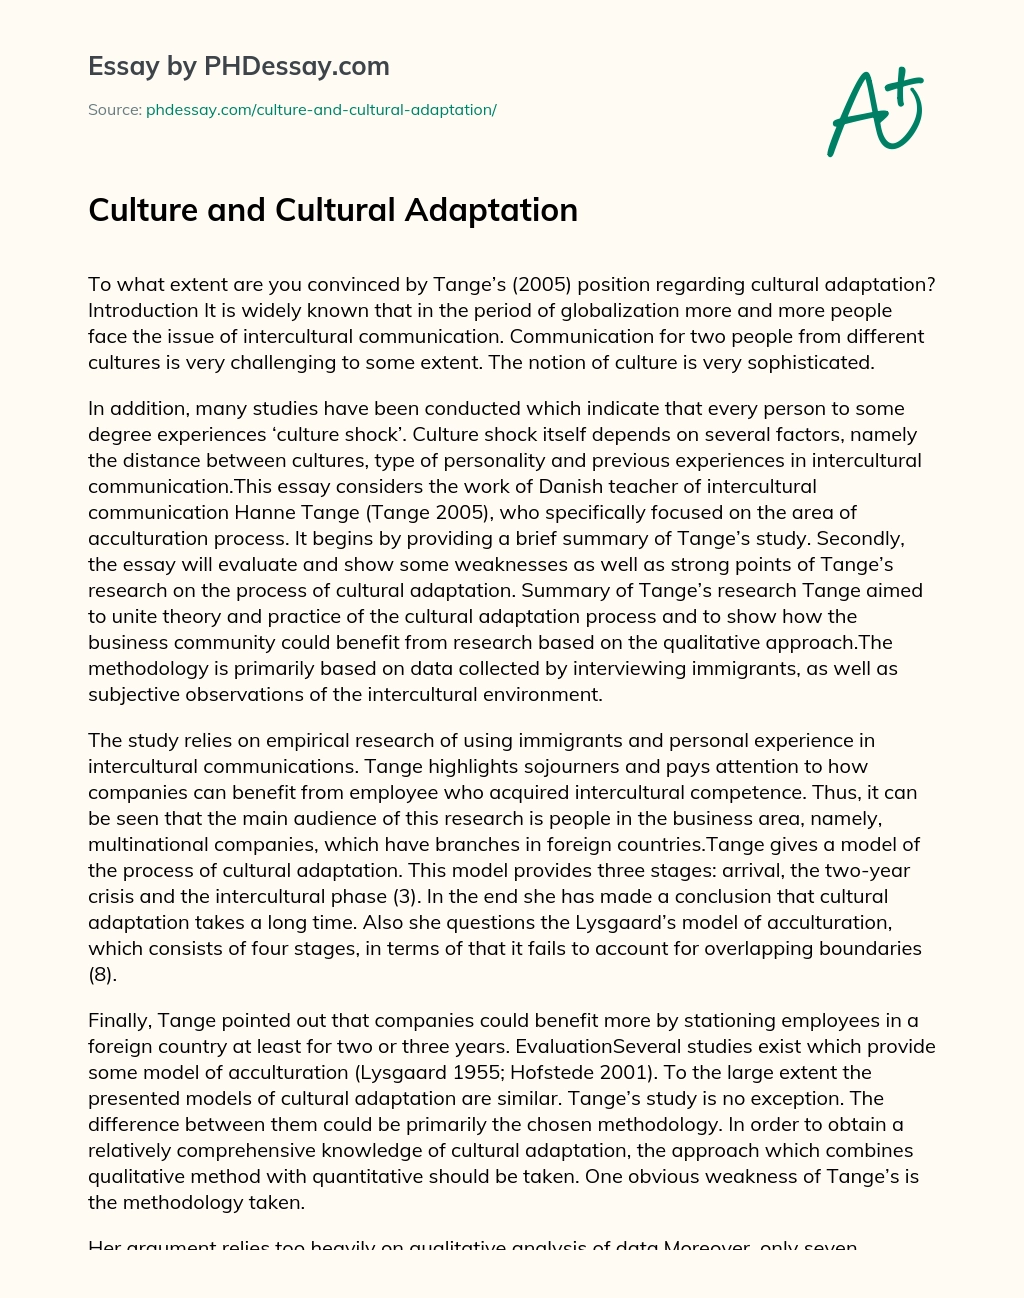 Culture and Cultural Adaptation essay